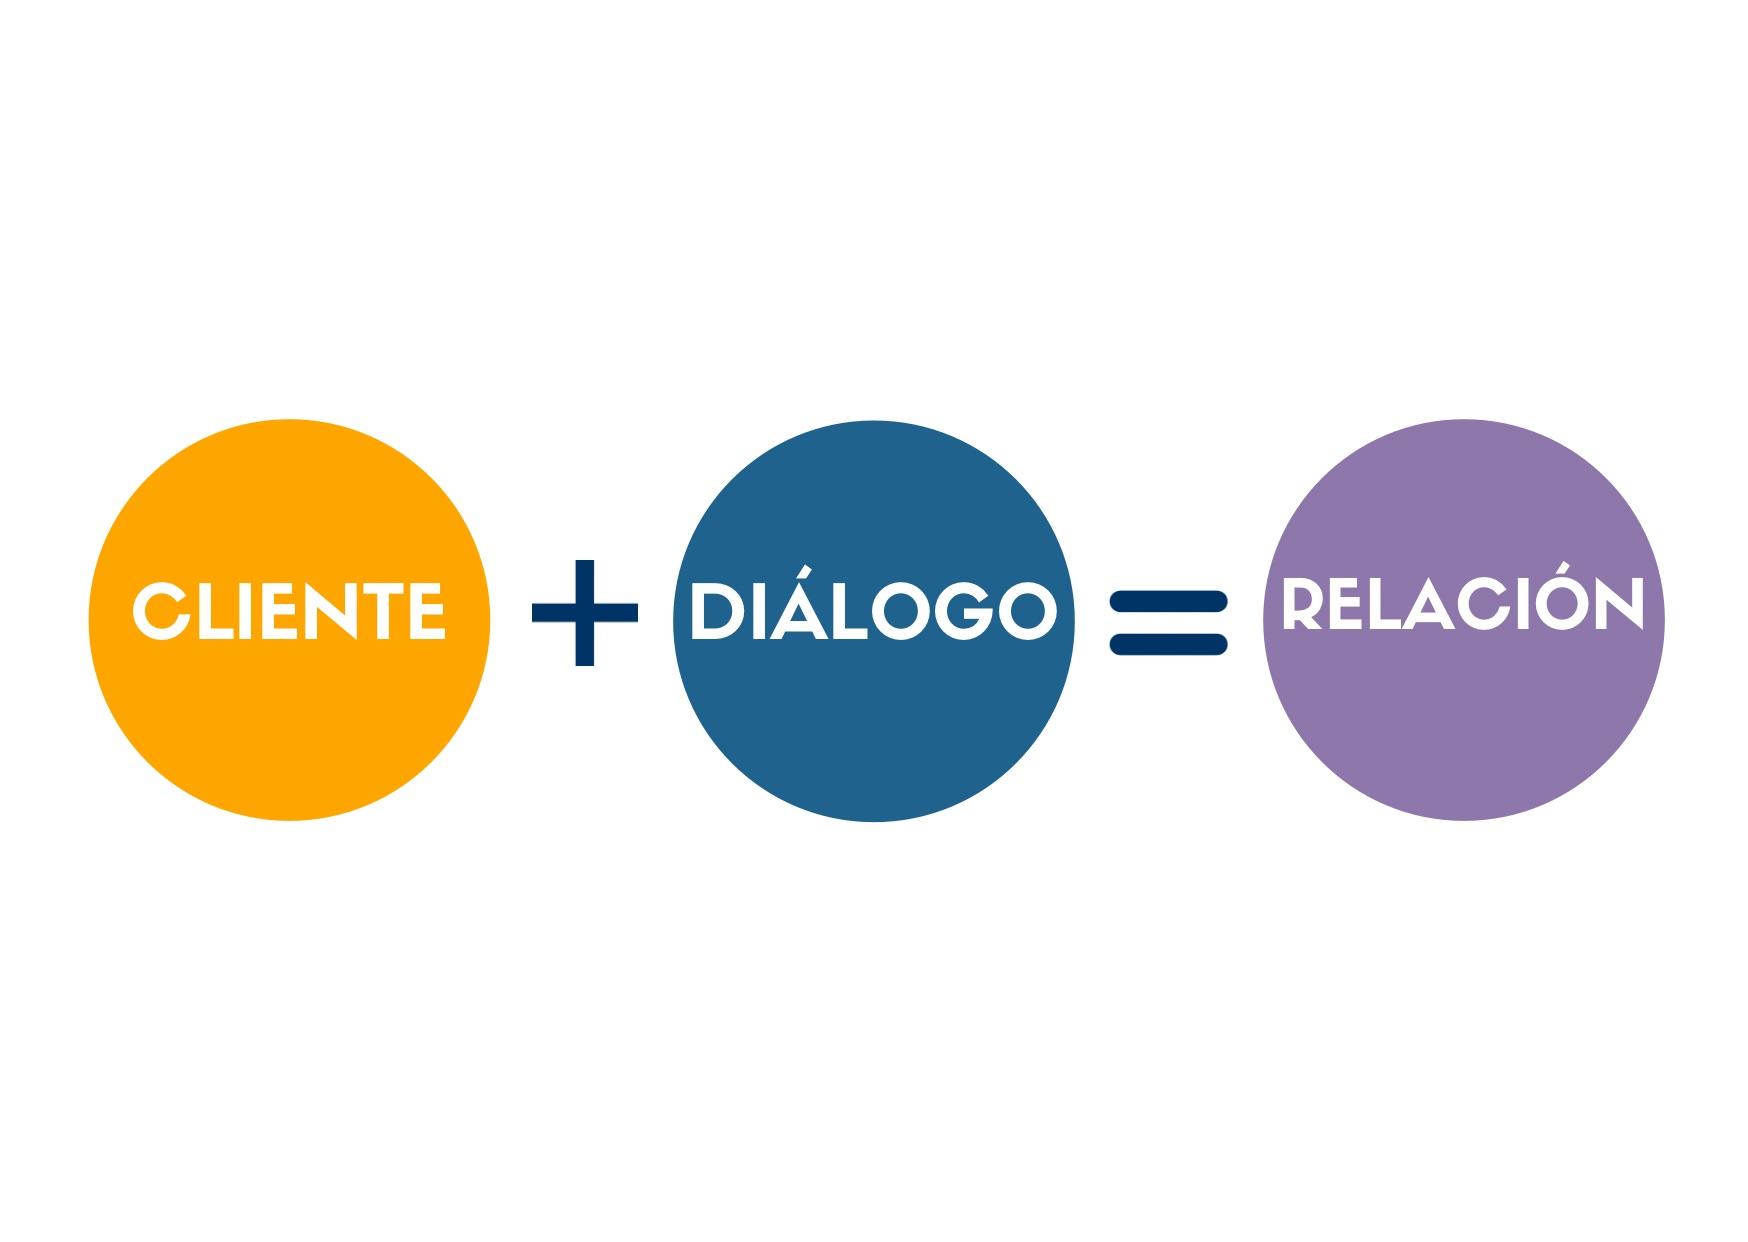  Técnica “cliente” + “diálogo” = “relación”